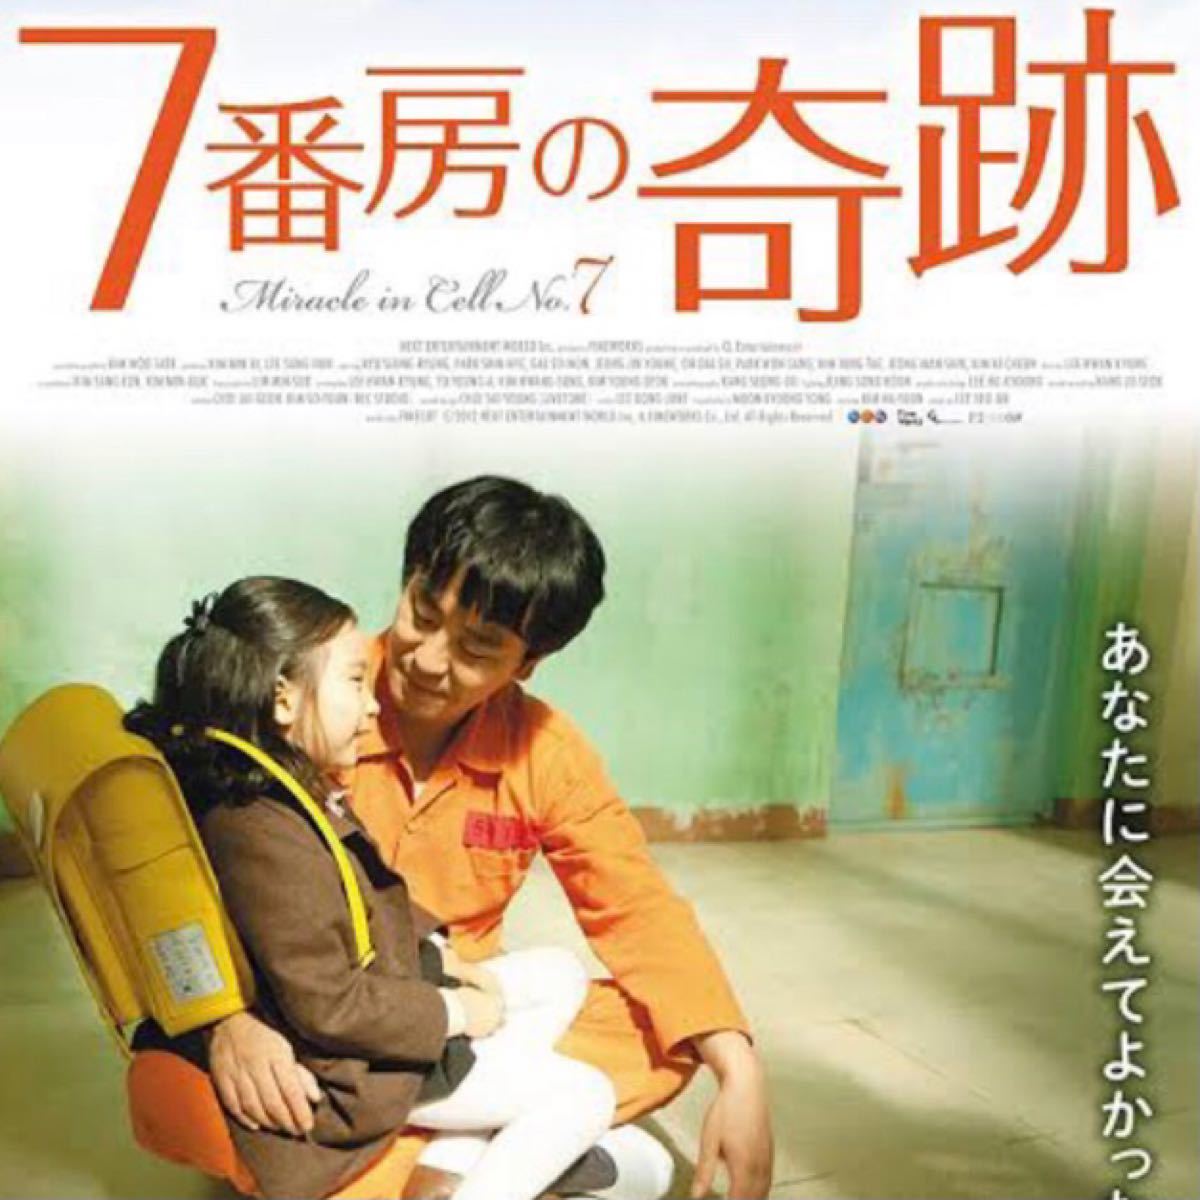 韓国映画  7番房の奇跡  リュ・スンリョン  パク・シネ  カル・ソウォン  DVD  日本語吹替有り  レーベル有り